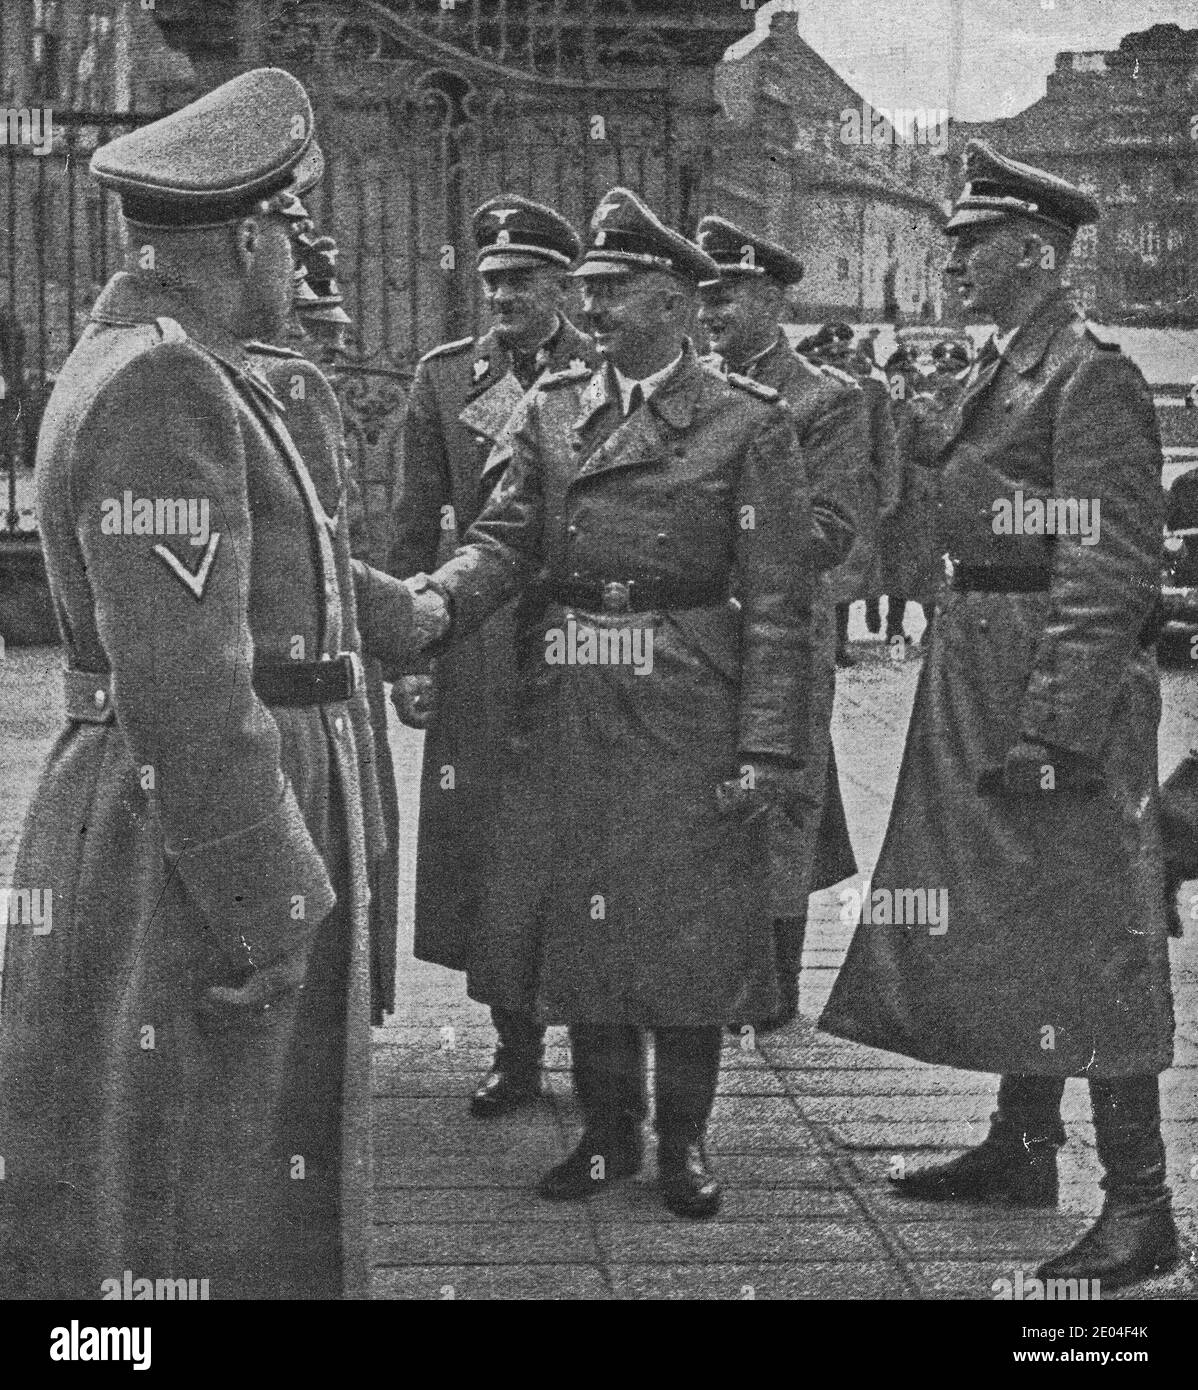 PRAG, PROTEKTORAT BÖHMEN UND MÄHREN - OKTOBER 1941: Reichsführer Heinrich Himmler begrüßt andere nazis auf der Prager Burg. Auf der rechten Seite ist Reinha Stockfoto